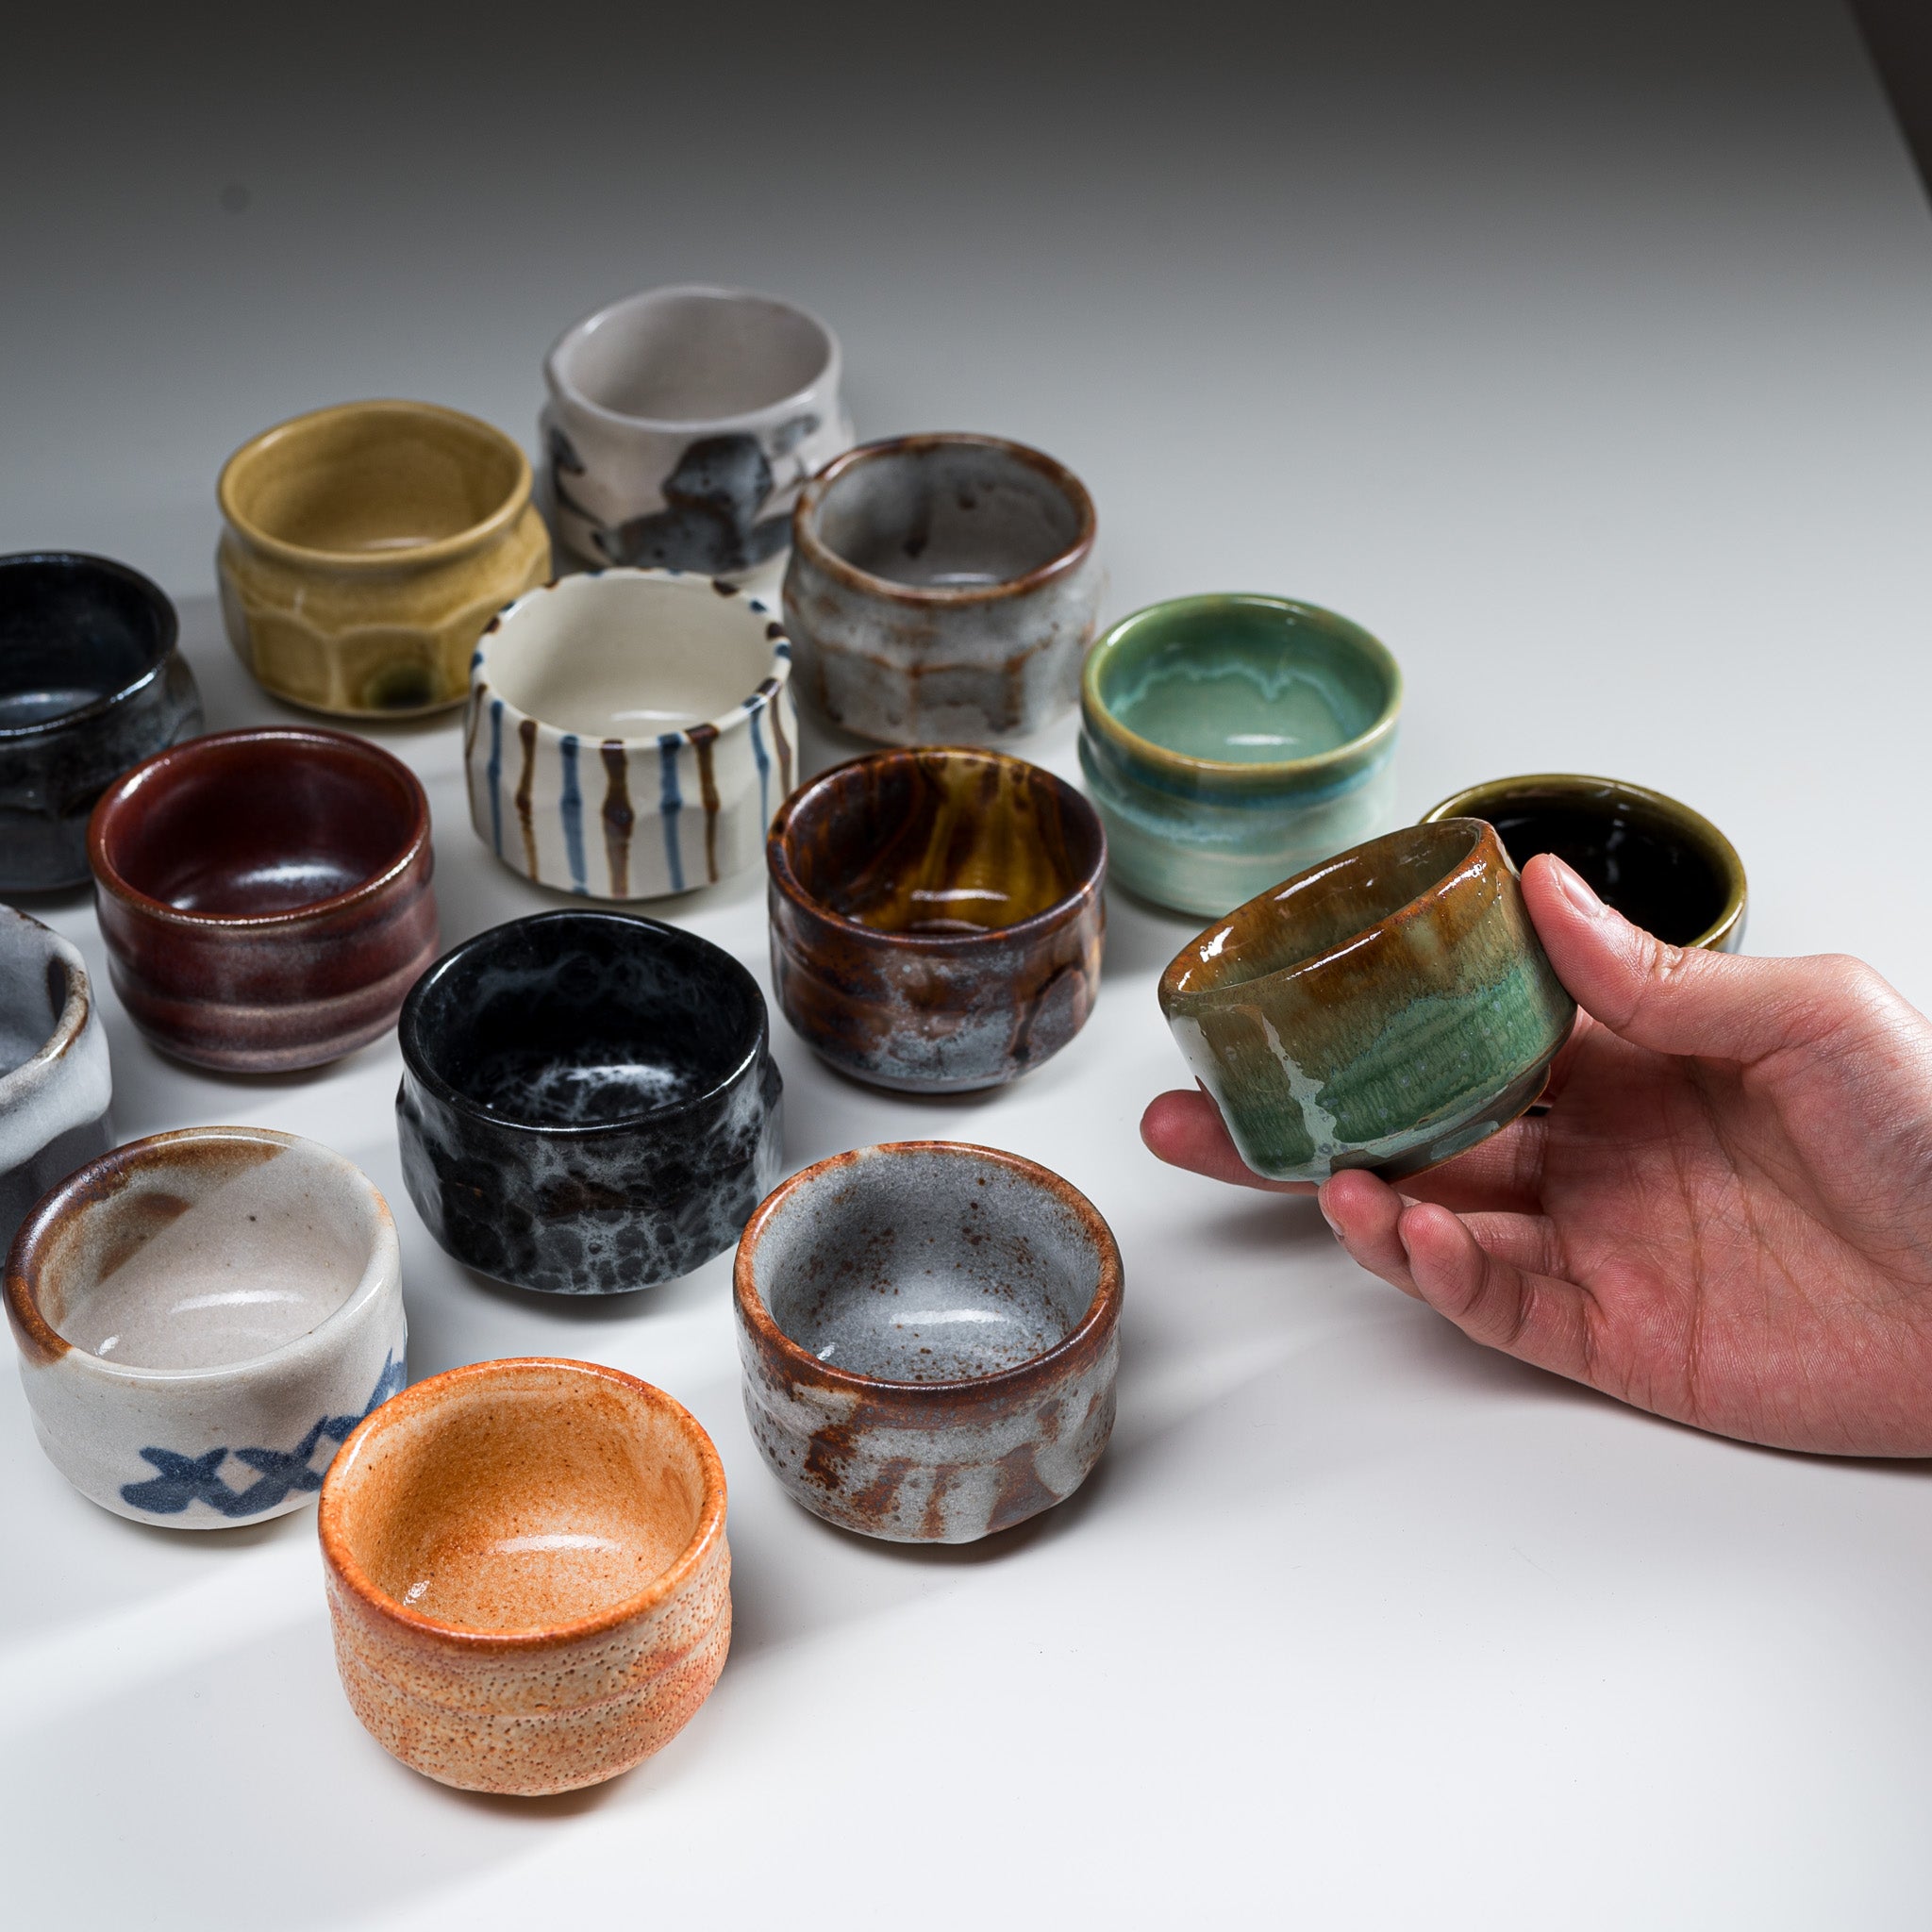 Mino ware Pottery Sake Cup / Teacup - Kogarashi / 美濃焼き ぐい呑み